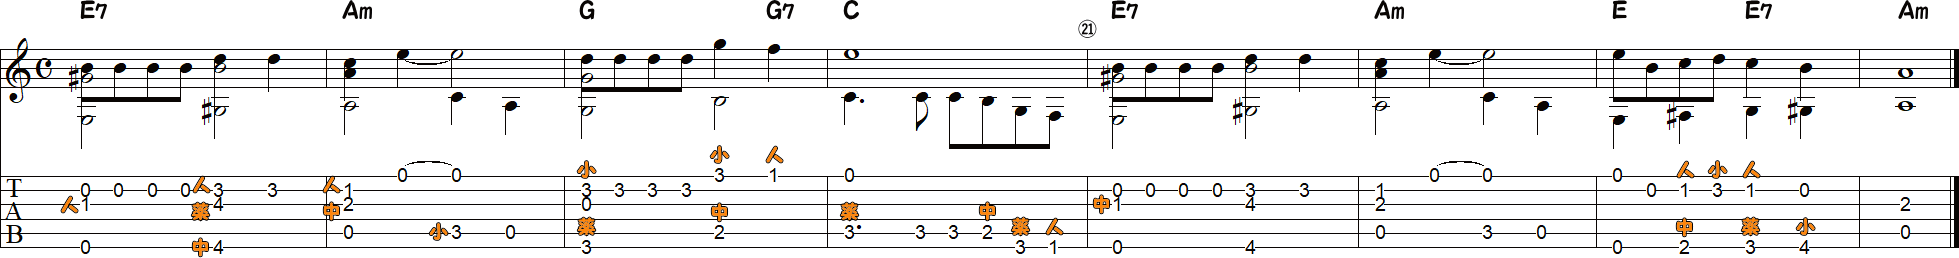 ドナドナ（ソロギター17～24小節目）の譜面